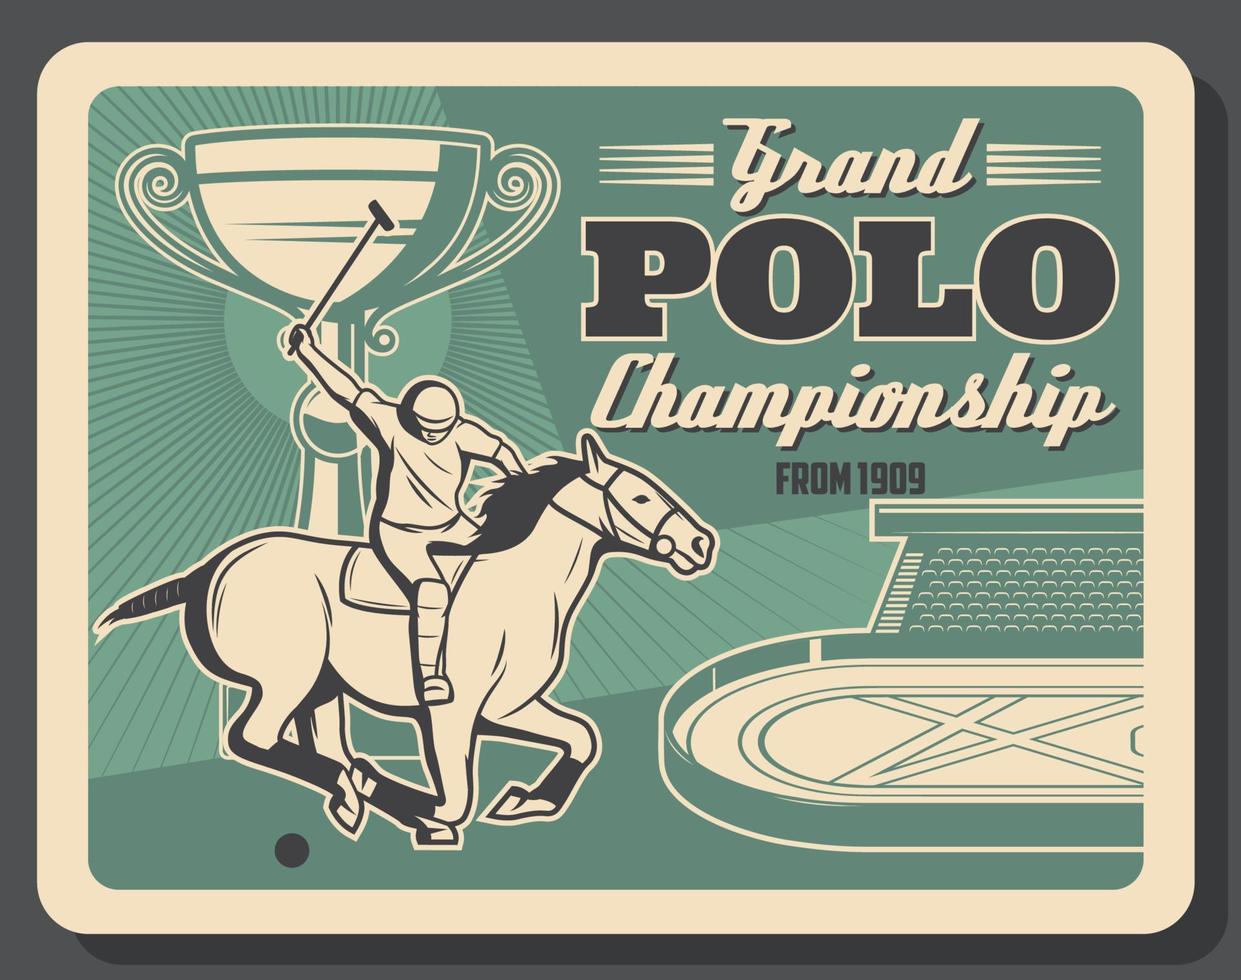 Pferderennverein, Polo-Meisterschaftsturnier vektor